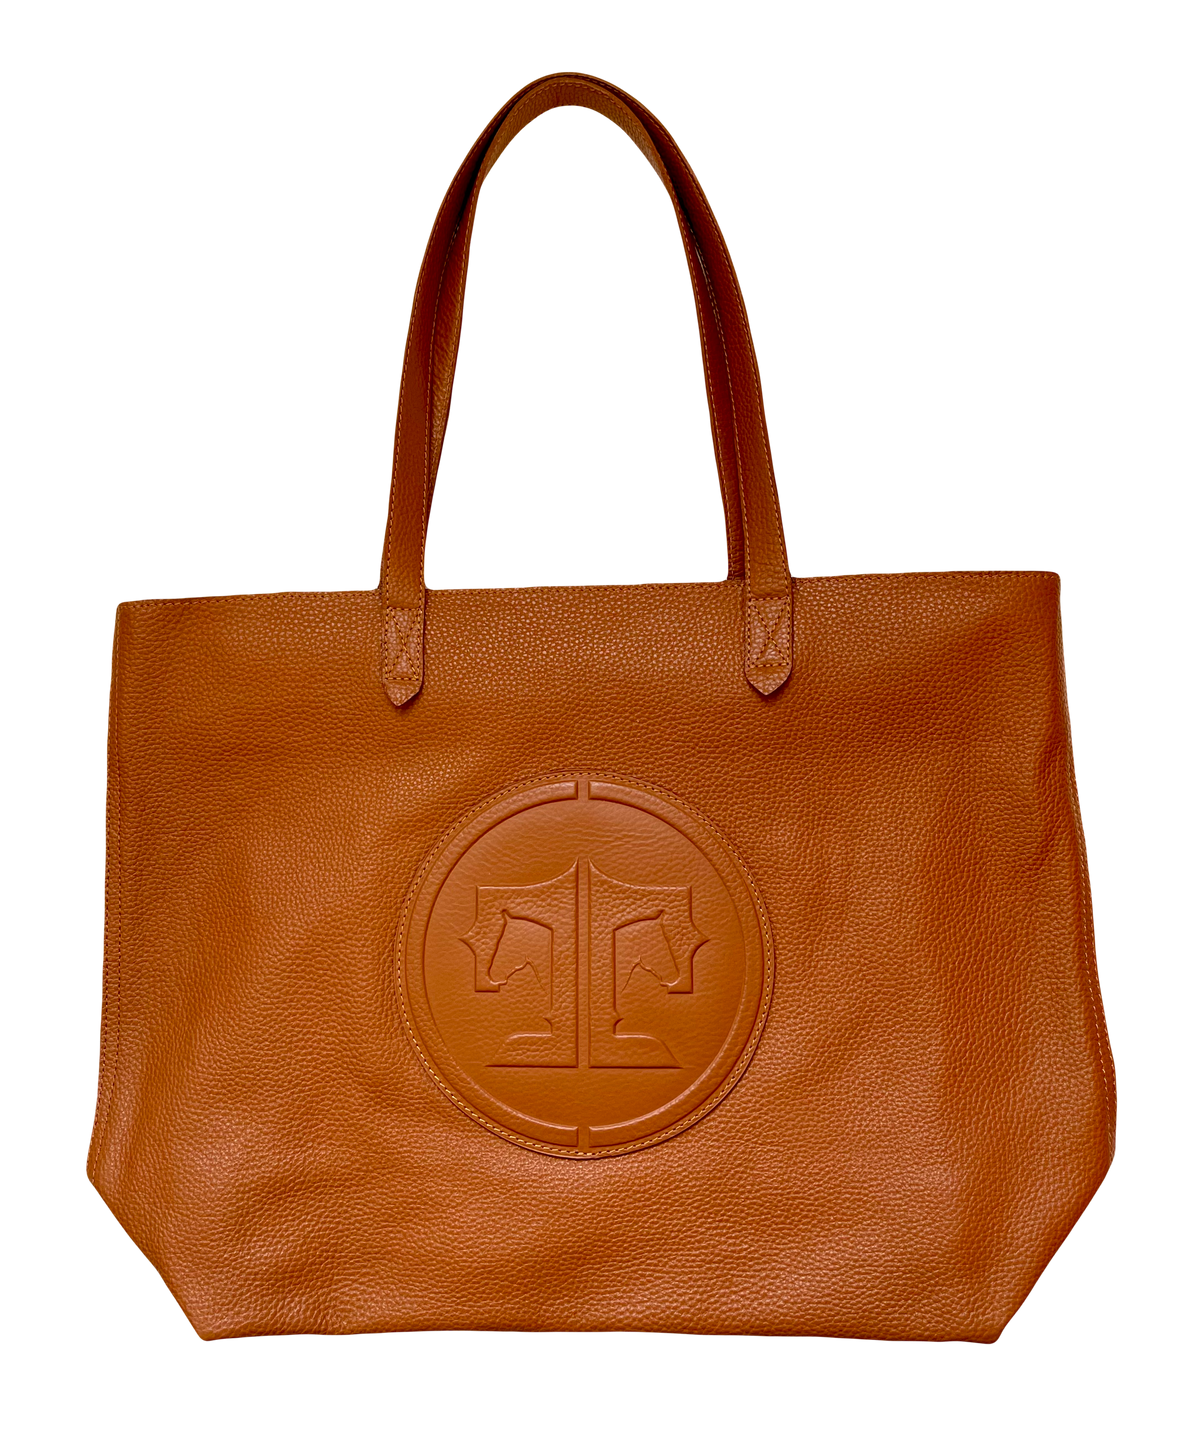 Tucker Tweed Equestrian Leather Handbags Signature Chestnut Sonoma Shoulder Bag: Signature